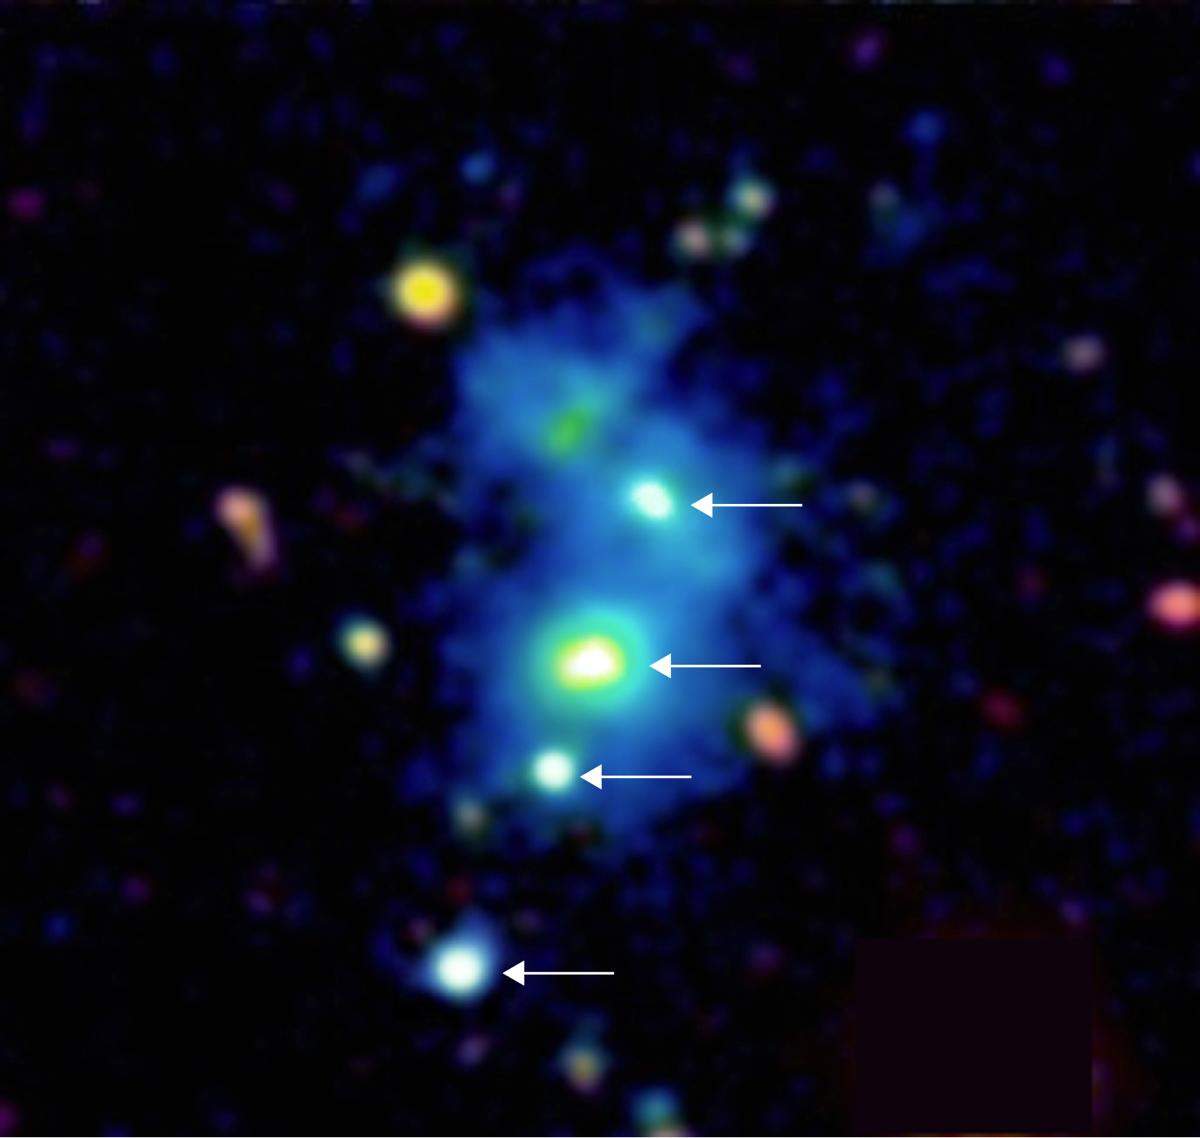 खगोलविदों ने 12 दुर्लभ चौगुनी क्वासर्स की खोज की जो ब्रह्मांड के विस्तार की दर को बेहतर ढंग से समझा सकते हैं